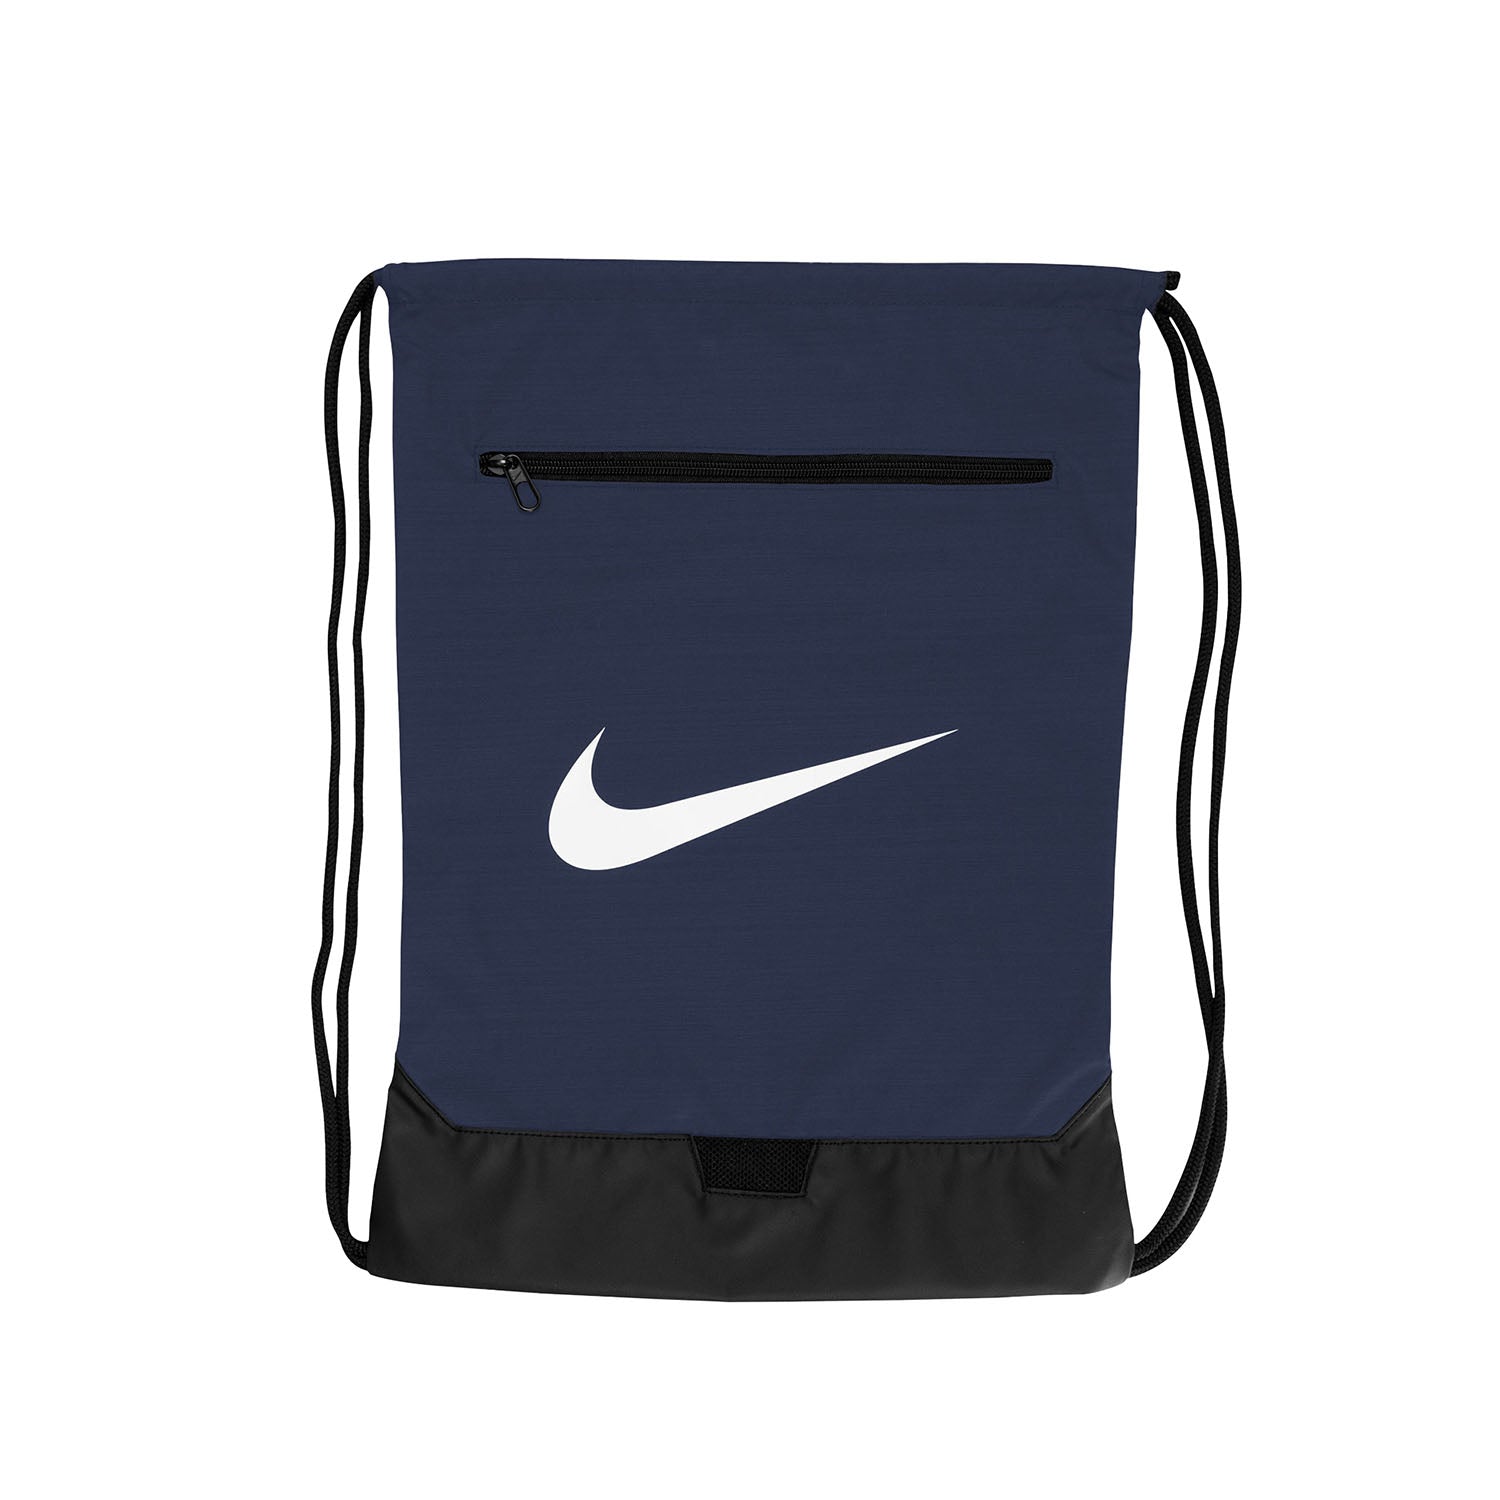 Nike Bay FC Brasilia Navy Drawstring Bag - Front View